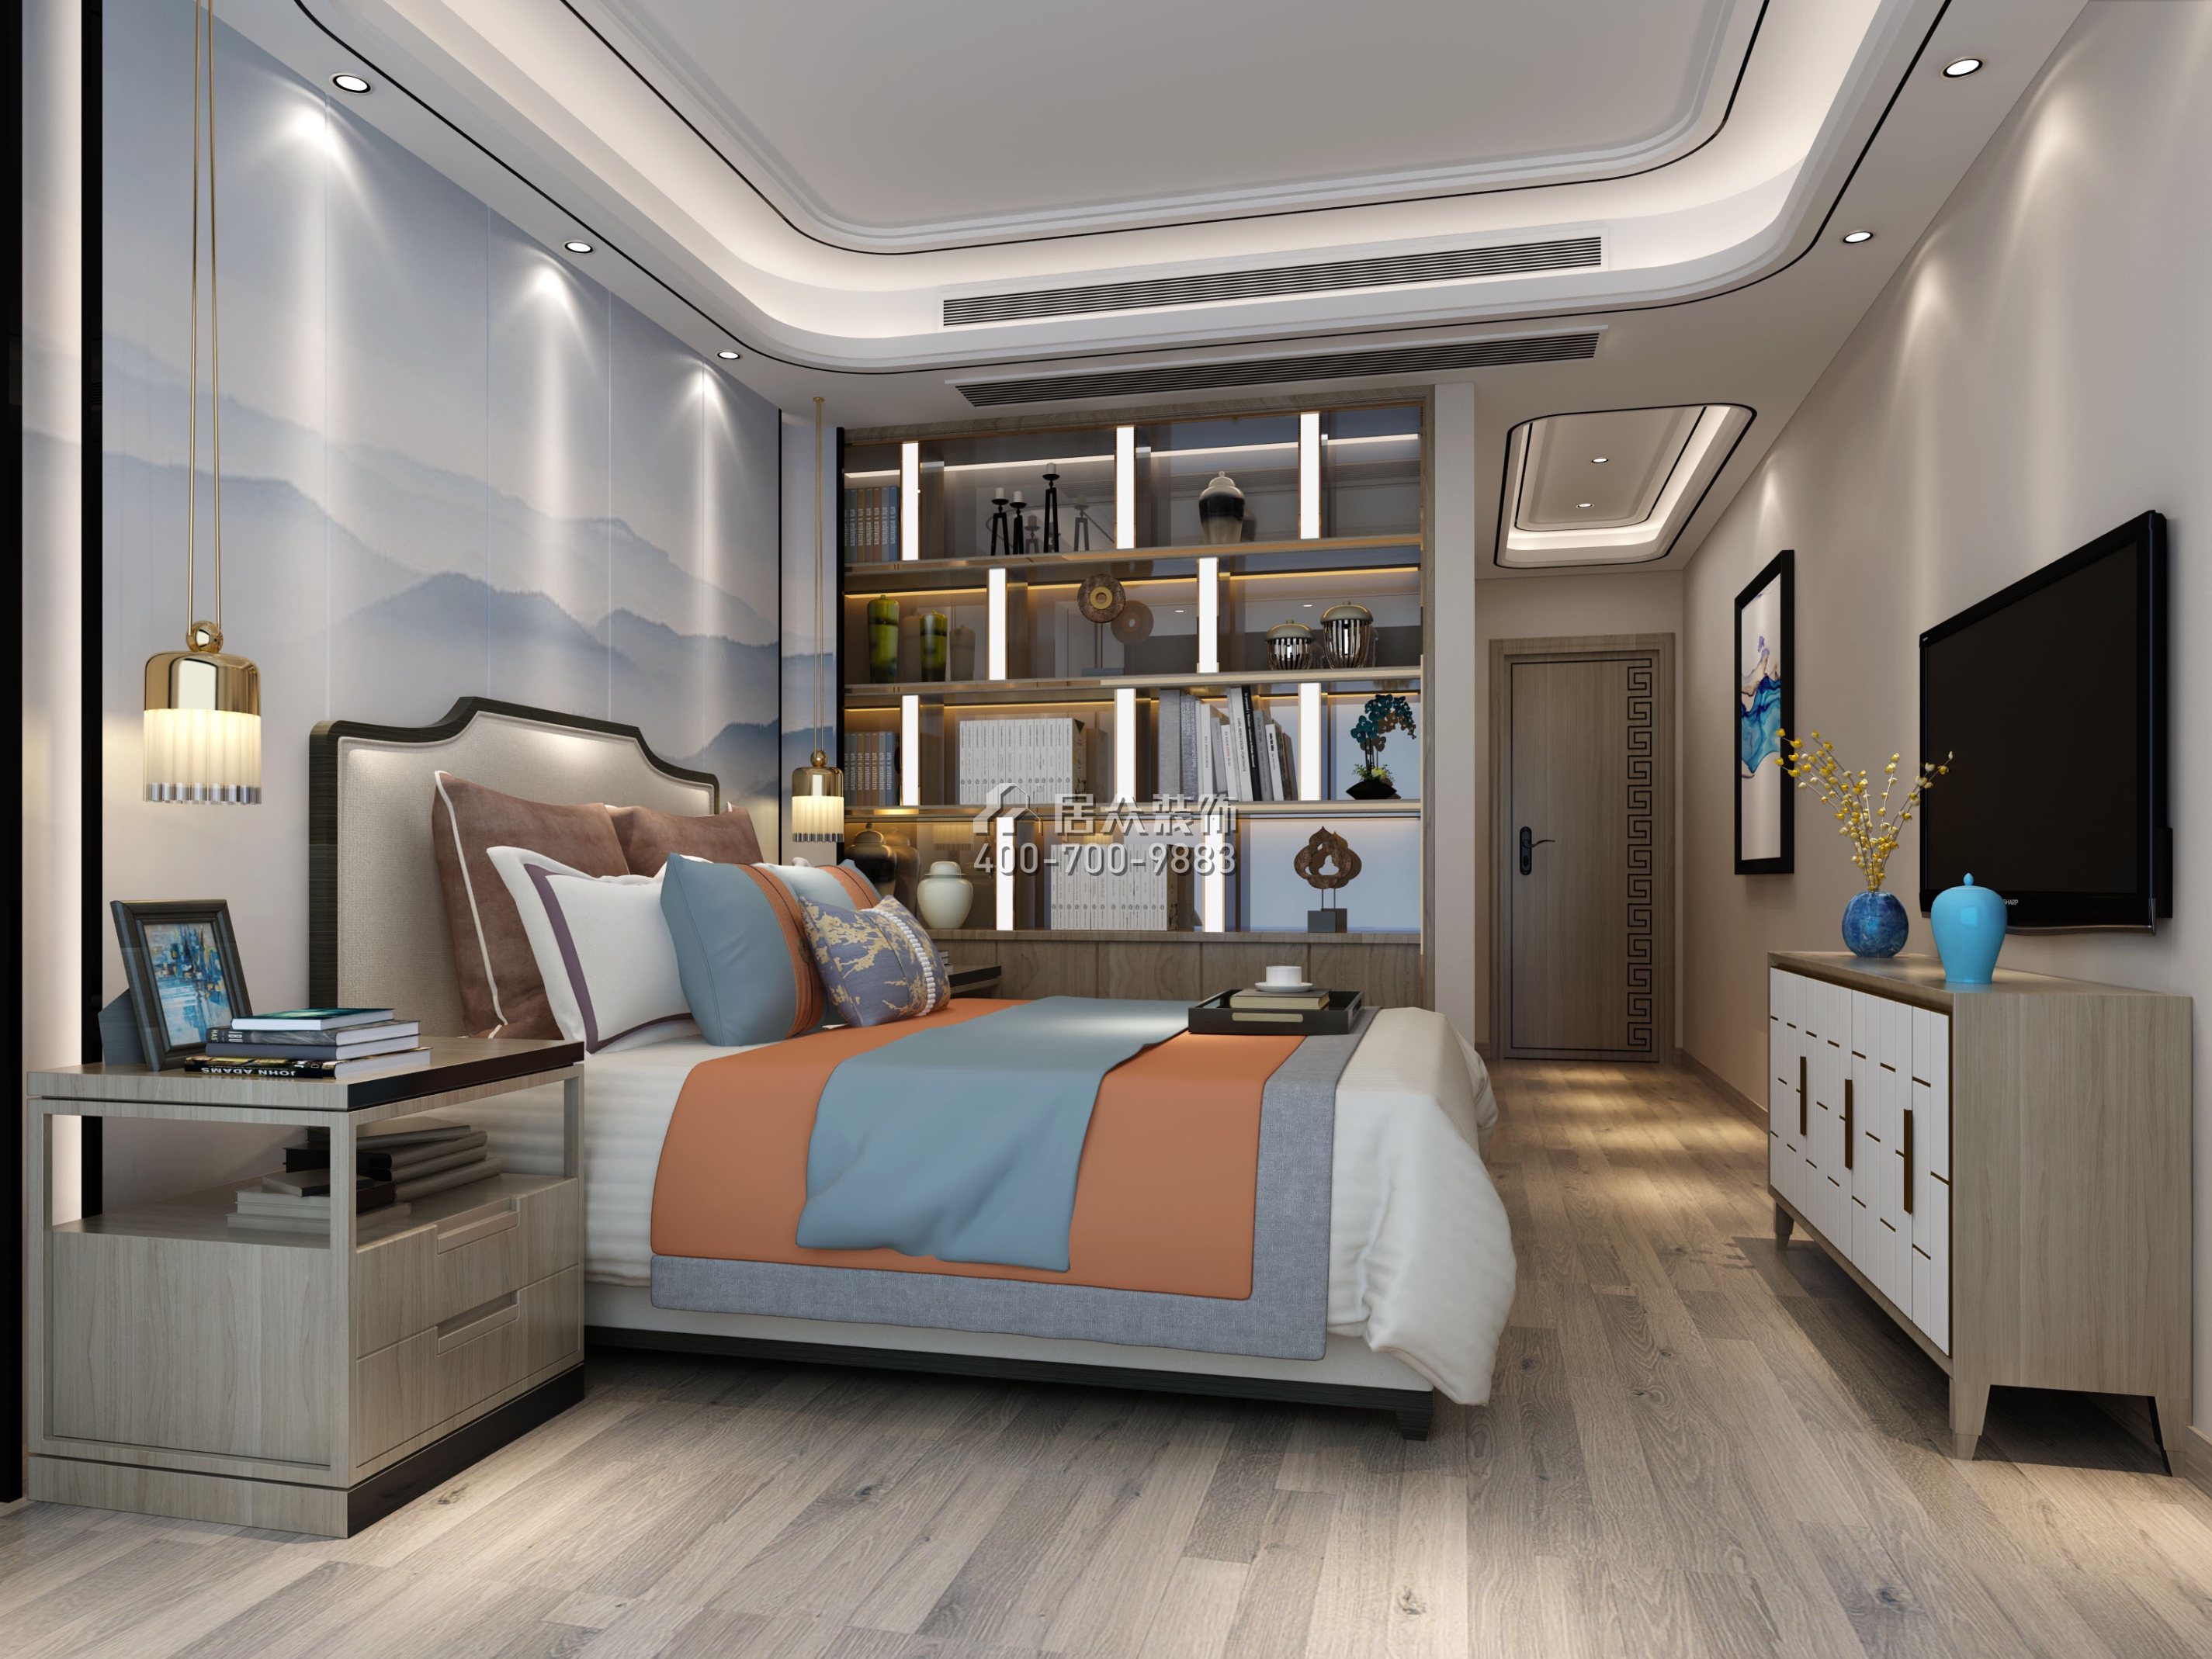 松河瑞园160平方米中式风格平层户型卧室装修效果图